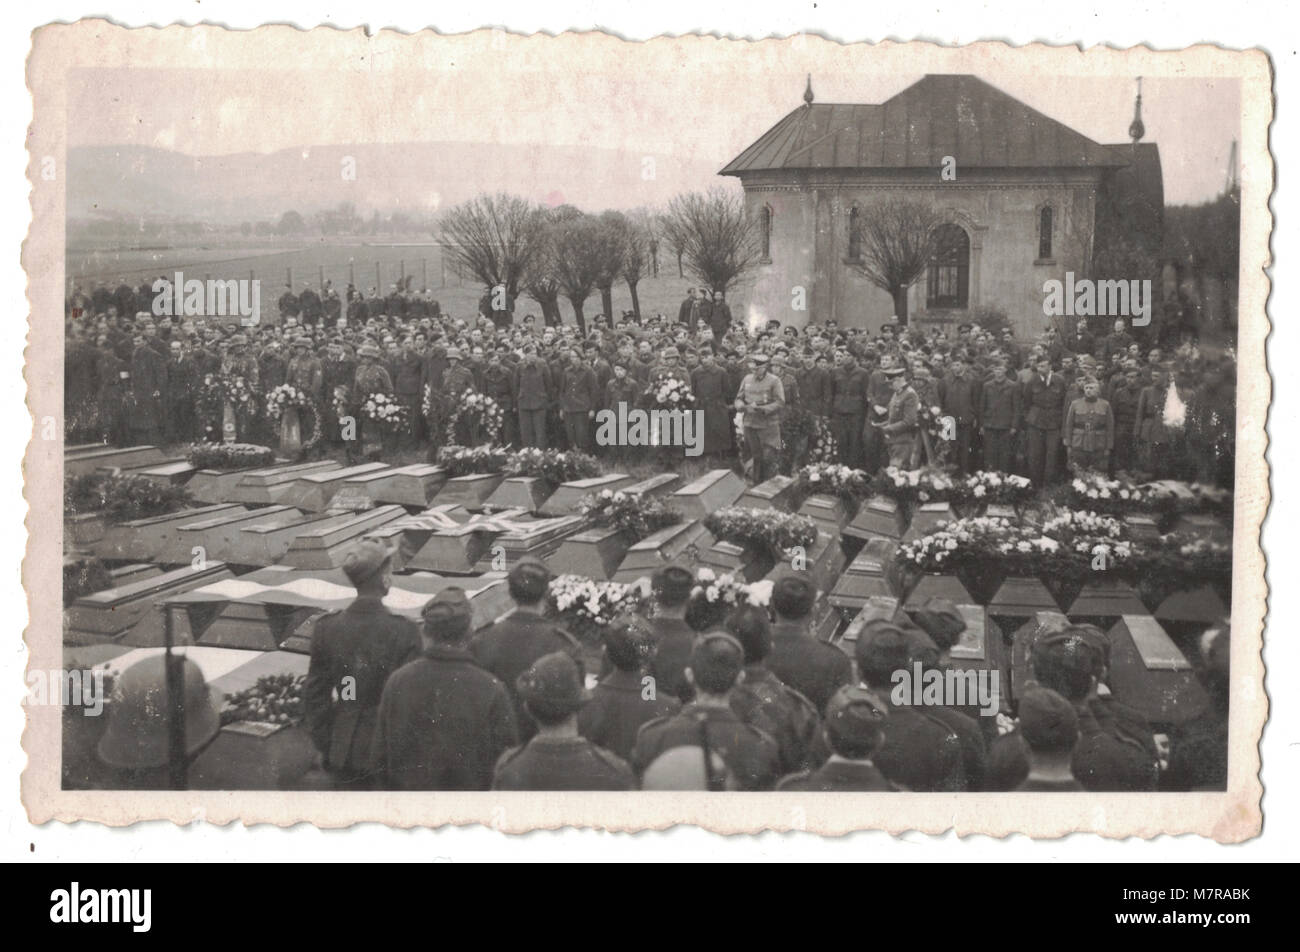 Entierro, entierro masivo de tropas británicas en un cementerio cerca de Leipzig en Alemania el 27 de febrero de 1945, durante la Segunda Guerra Mundial, las fotografías son todas estampado en el reverso con Stalag IV-A, campamento de prisioneros de guerra Foto de stock